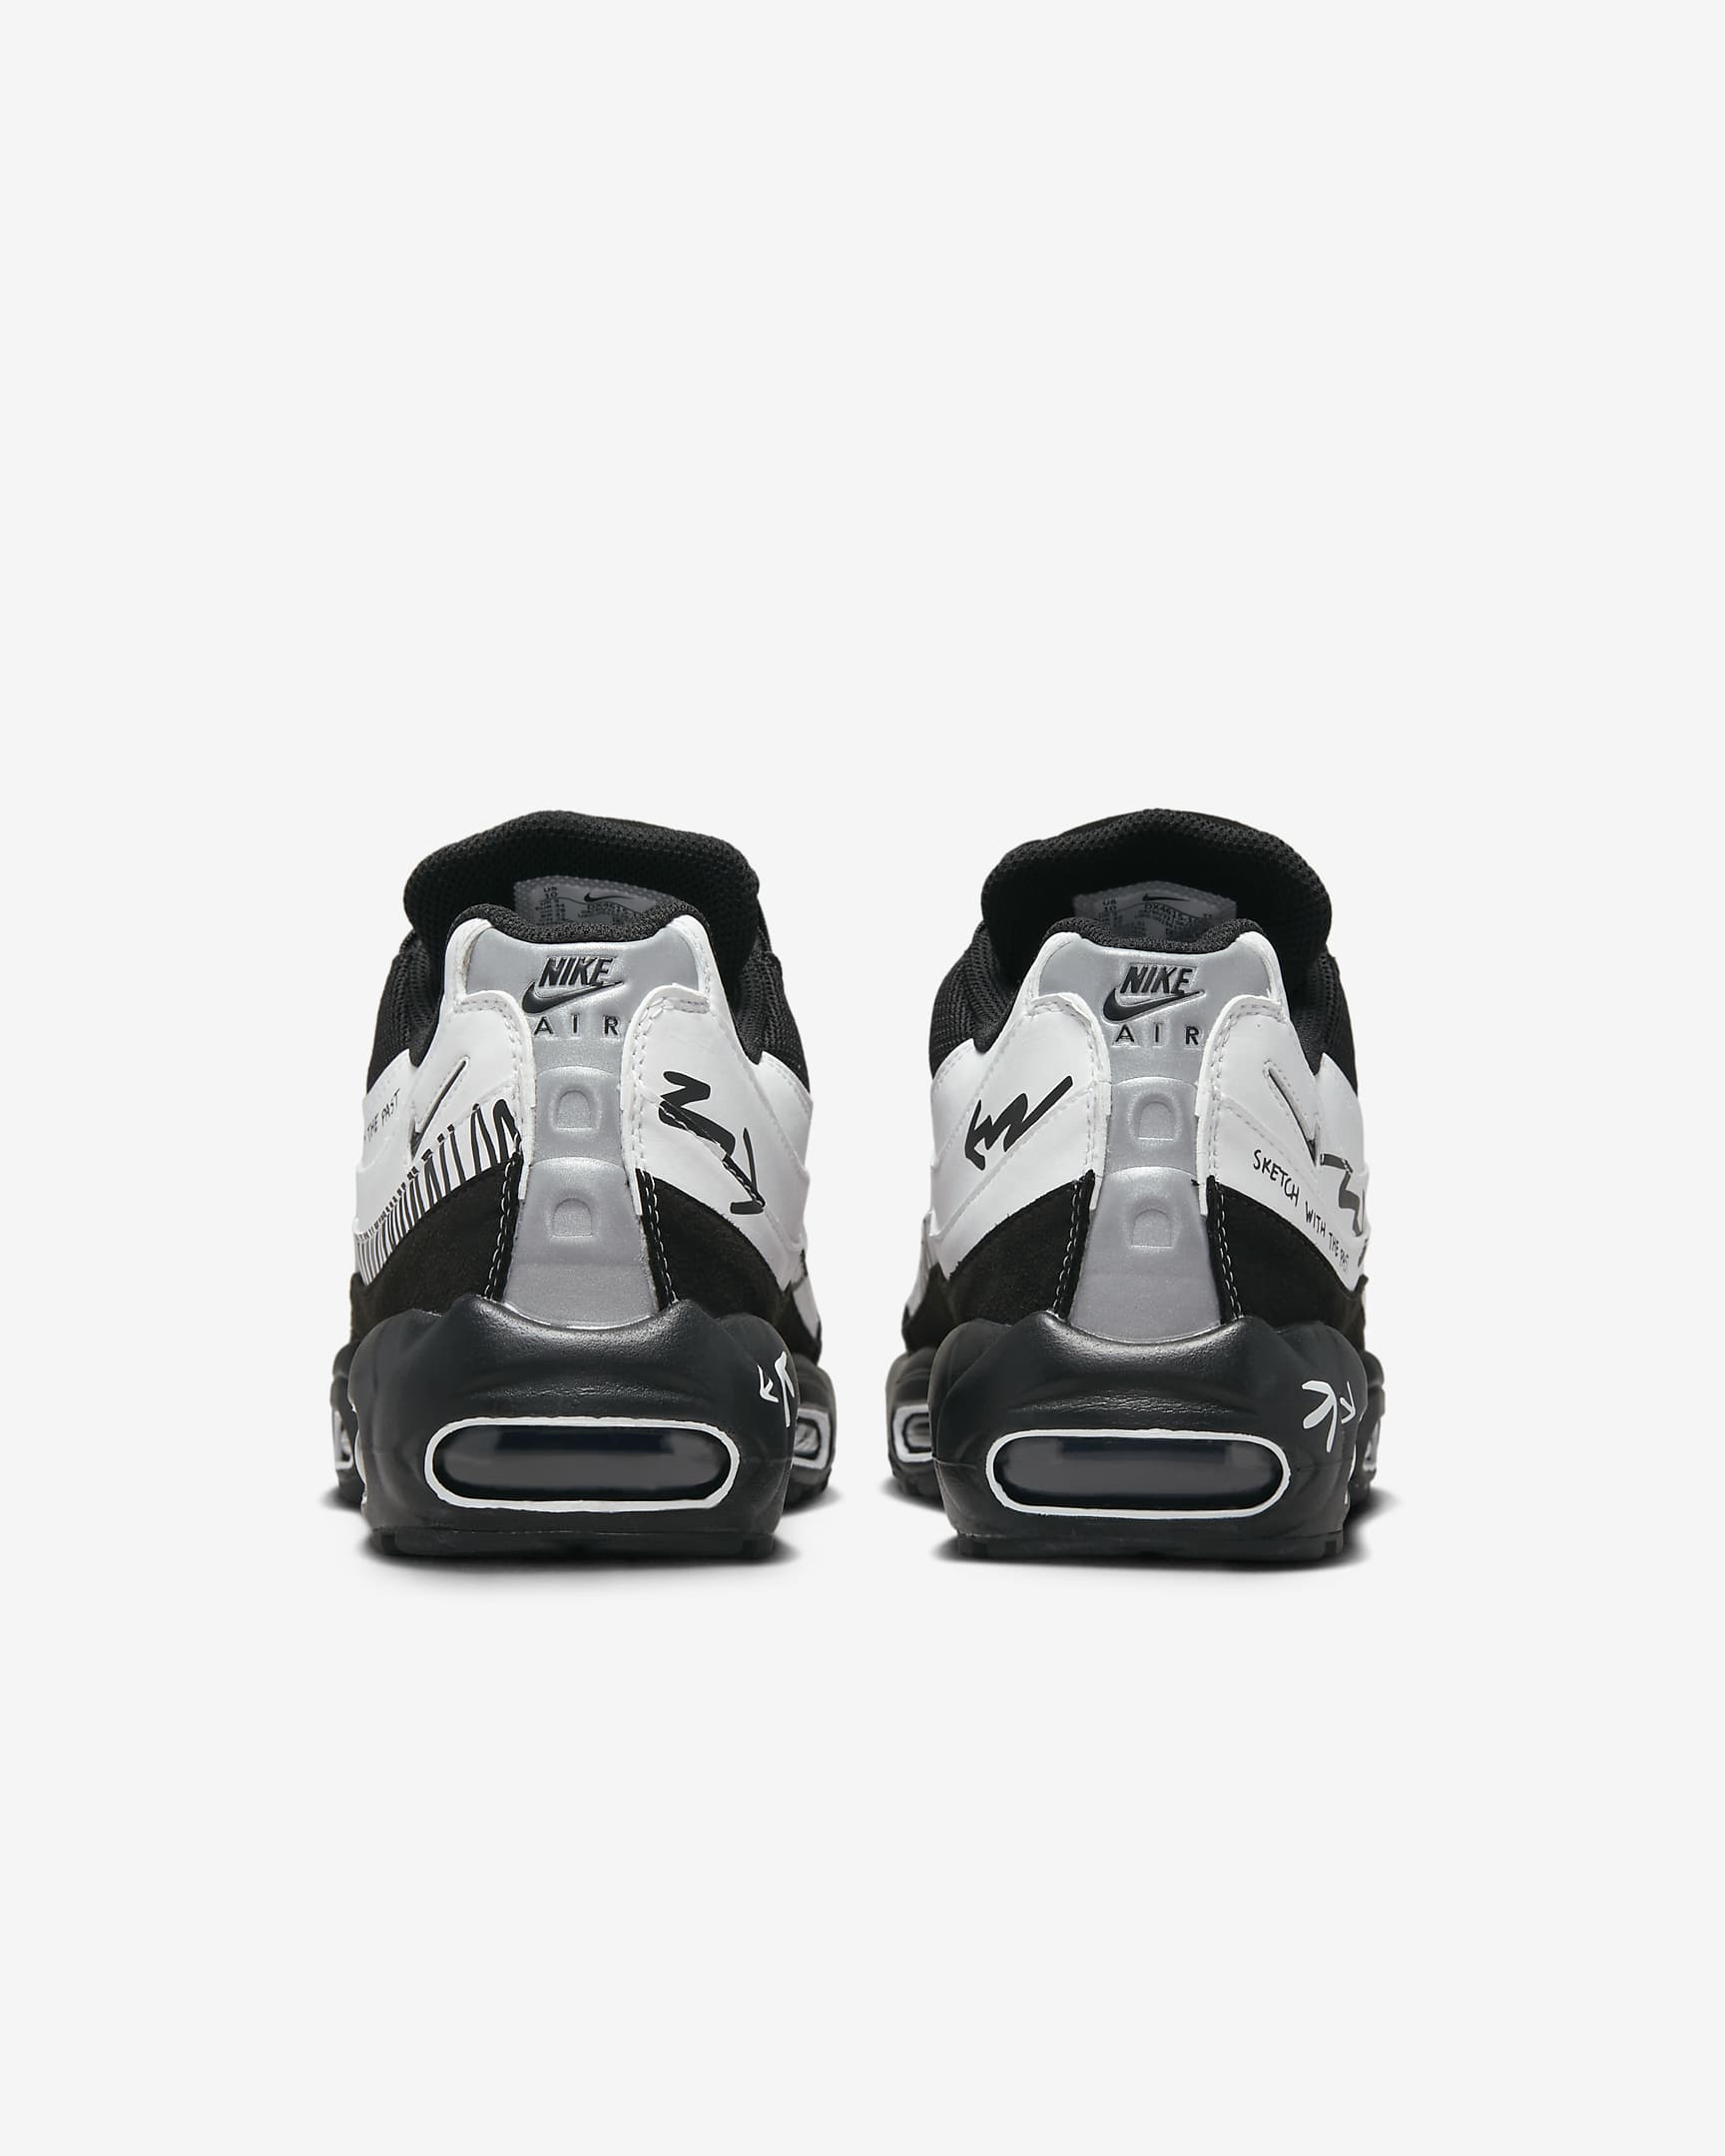 Nike Air Max 95 x Future Movement Shoes. Nike DK